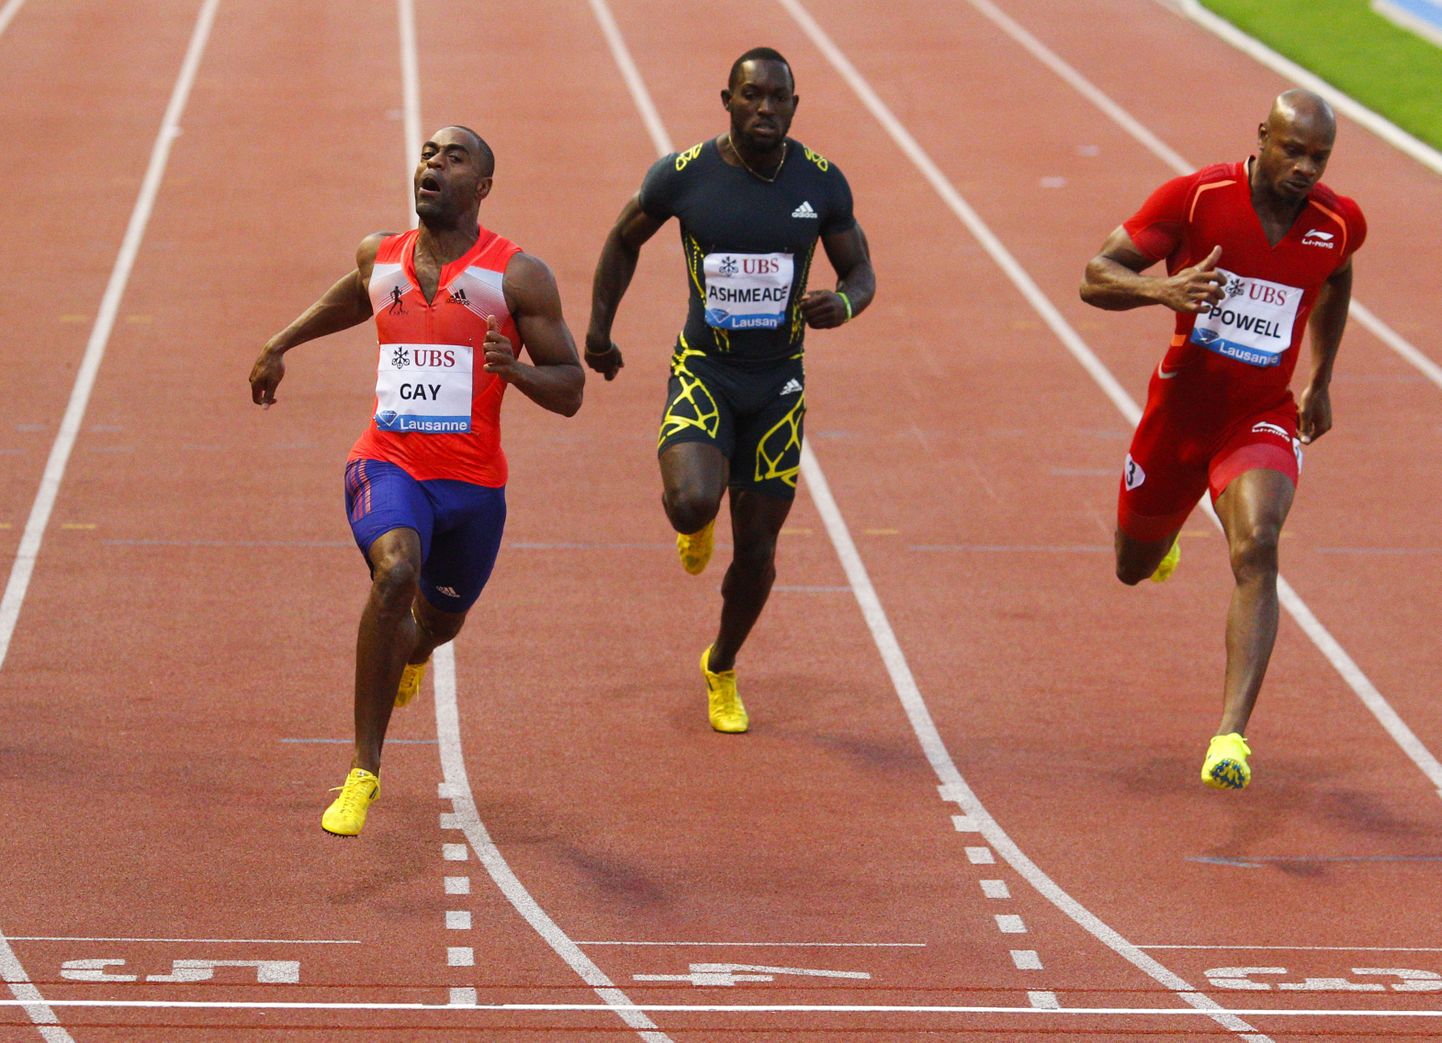 Dopingupatused sprinterid Tyson Gay (vasakul) ja  Asafa Powell (paremal) saavad ilmselt kaheaastase võistluskeelu. Pooleteise aasta pärast ootaks neid ees nelja aasta pikkune karistus.